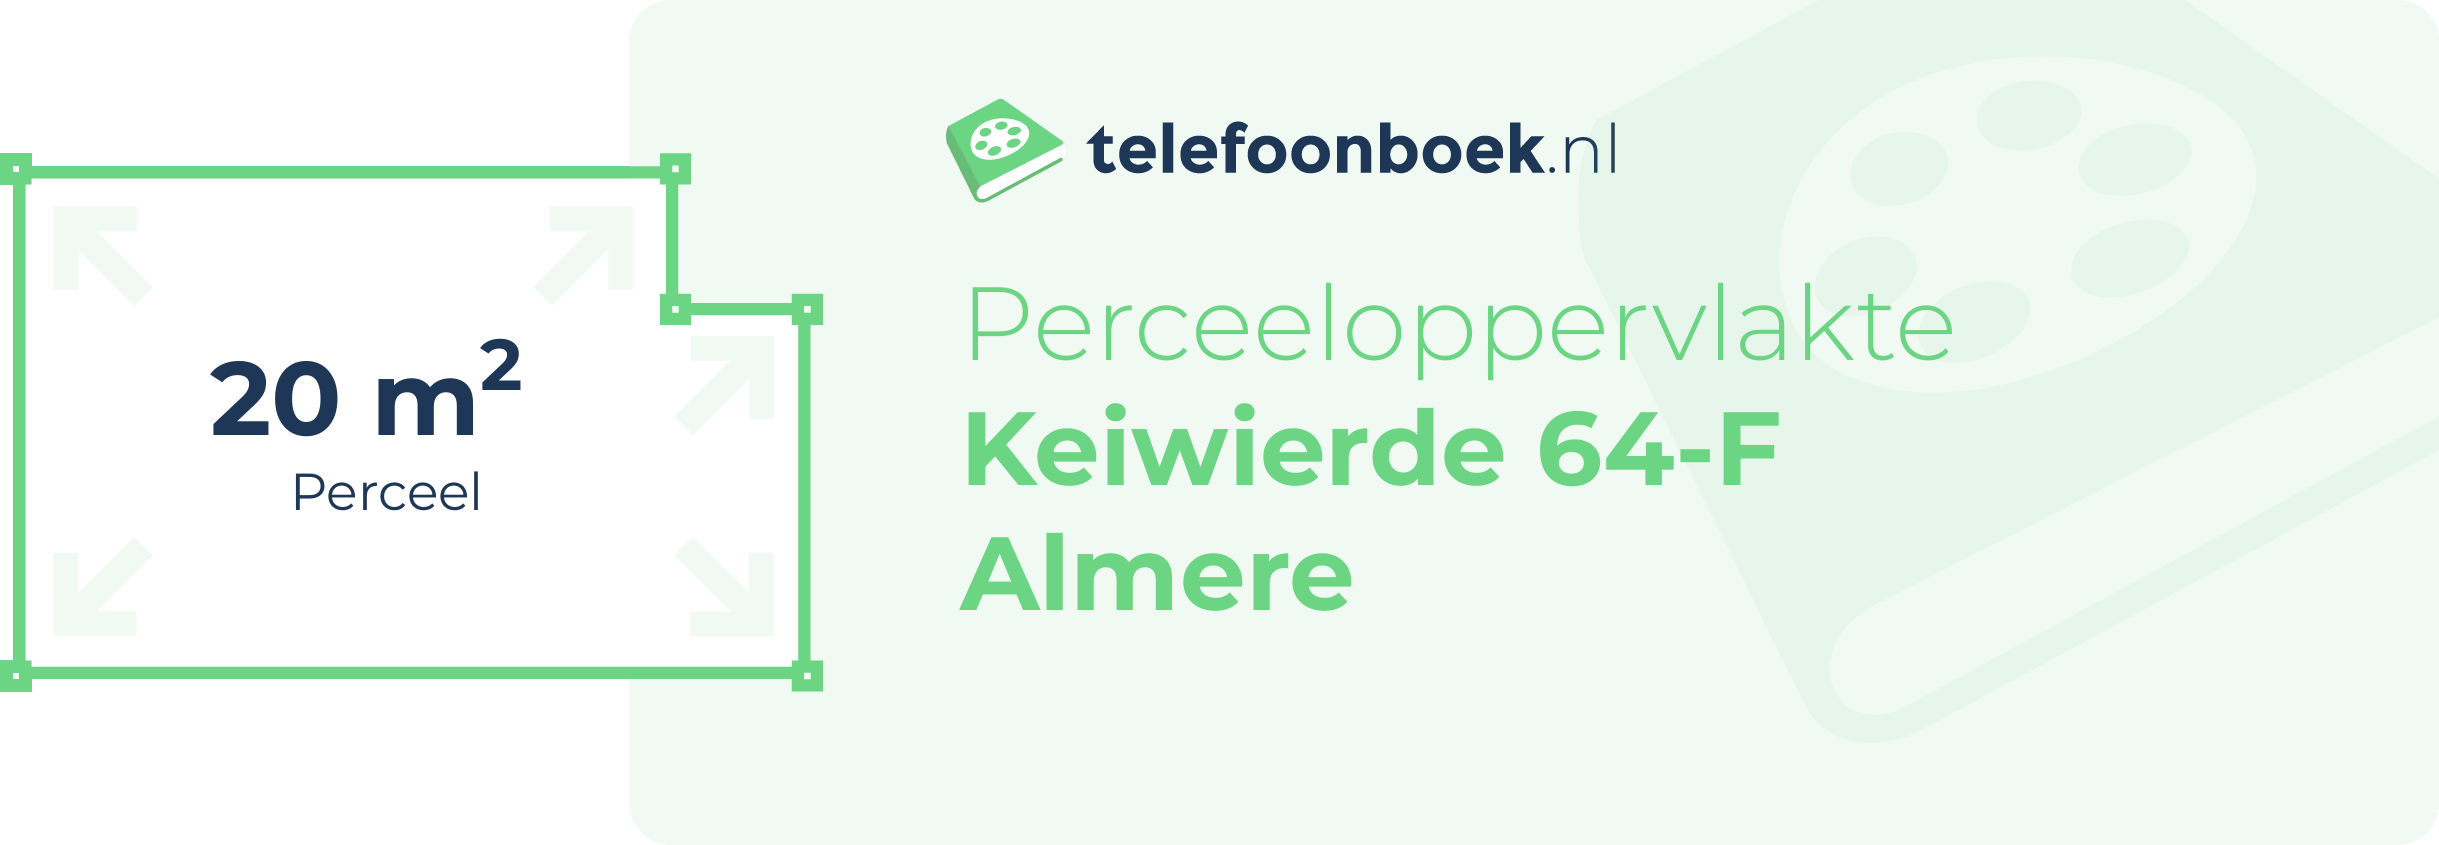 Perceeloppervlakte Keiwierde 64-F Almere